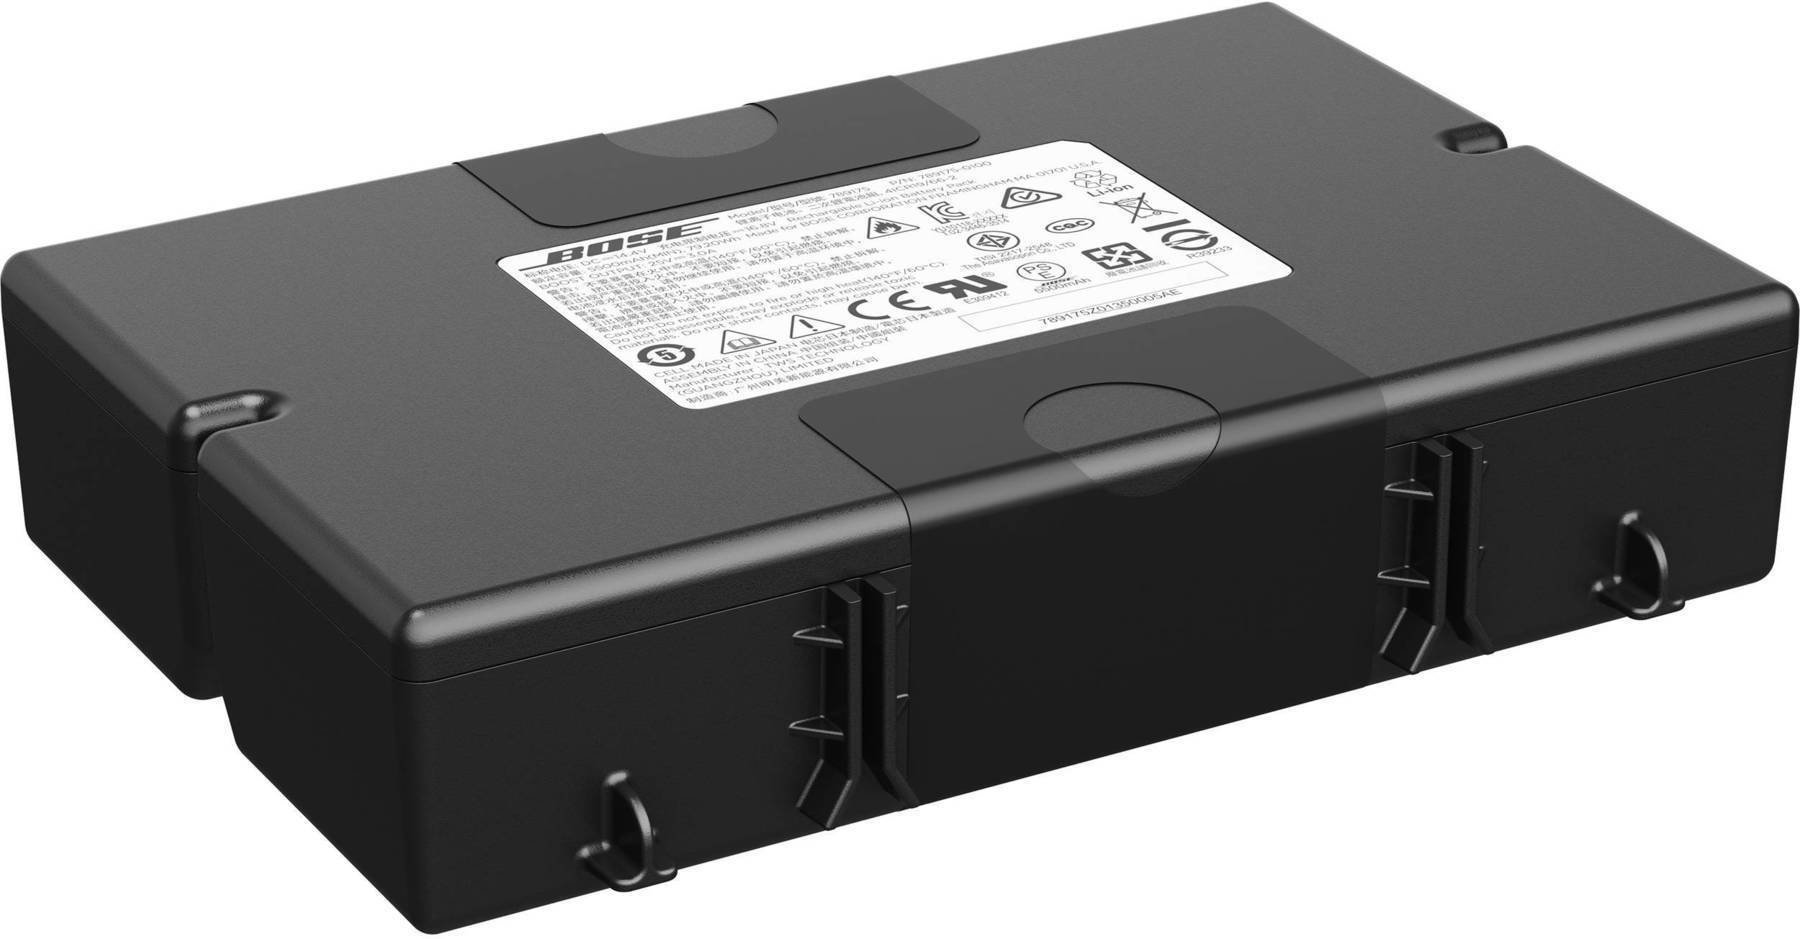 Vervangend onderdeel voor luidspreker Bose S1 Pro System Battery Pack Vervangend onderdeel voor luidspreker